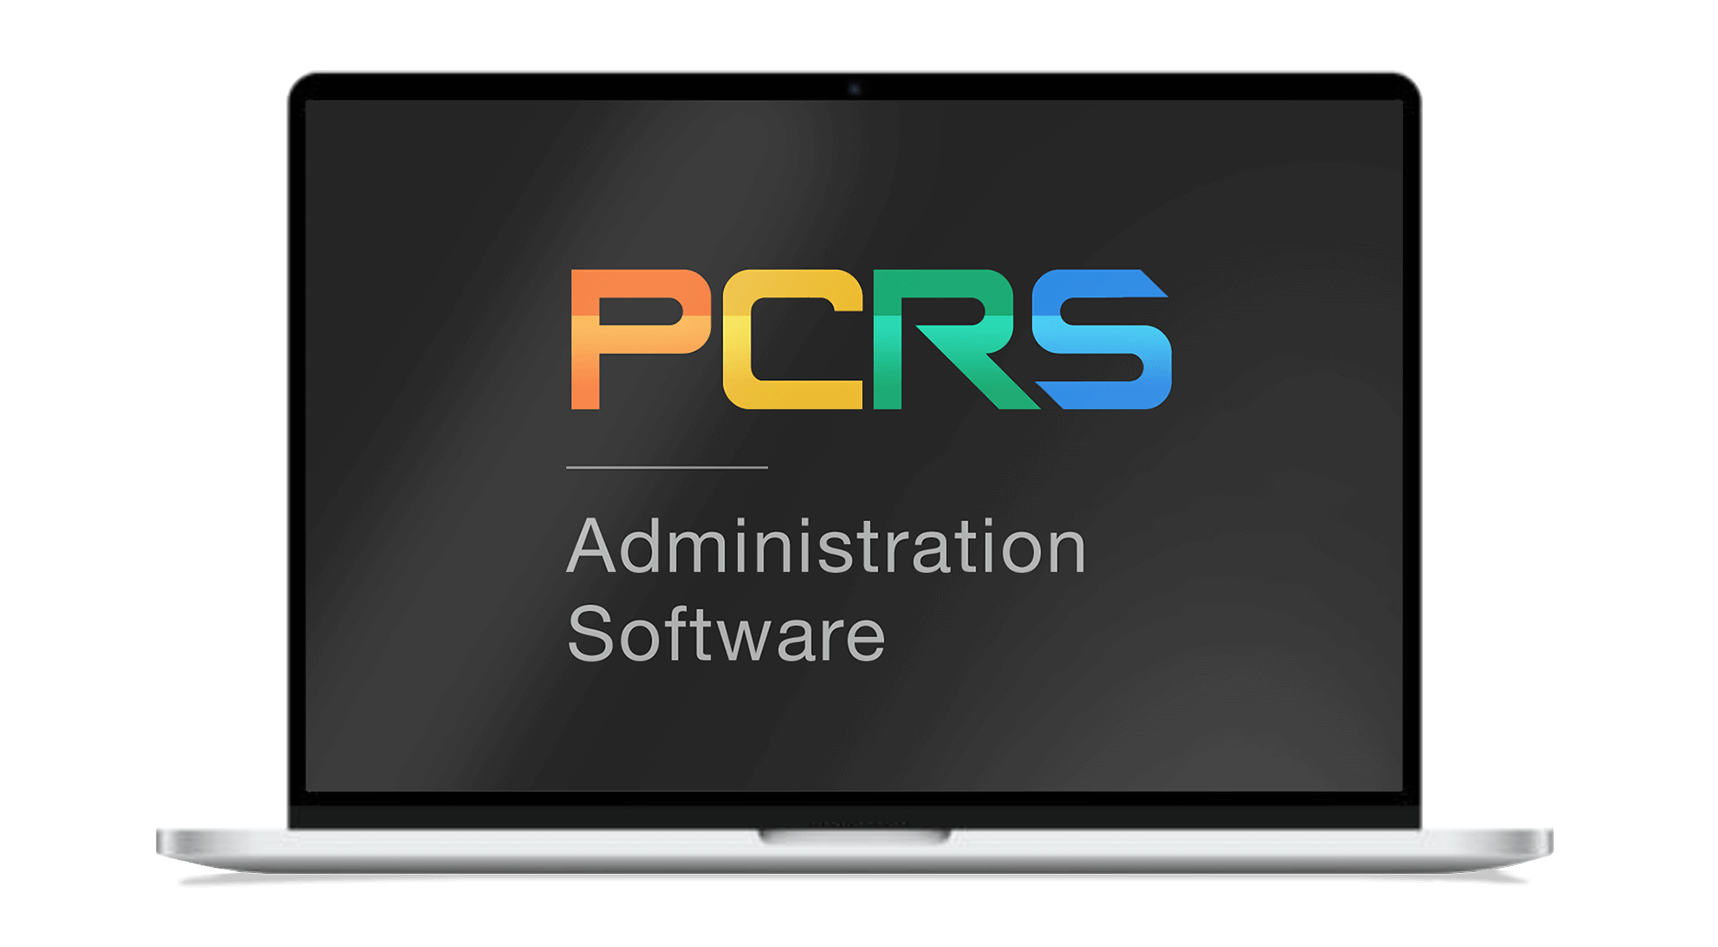 PCRS laptop logo